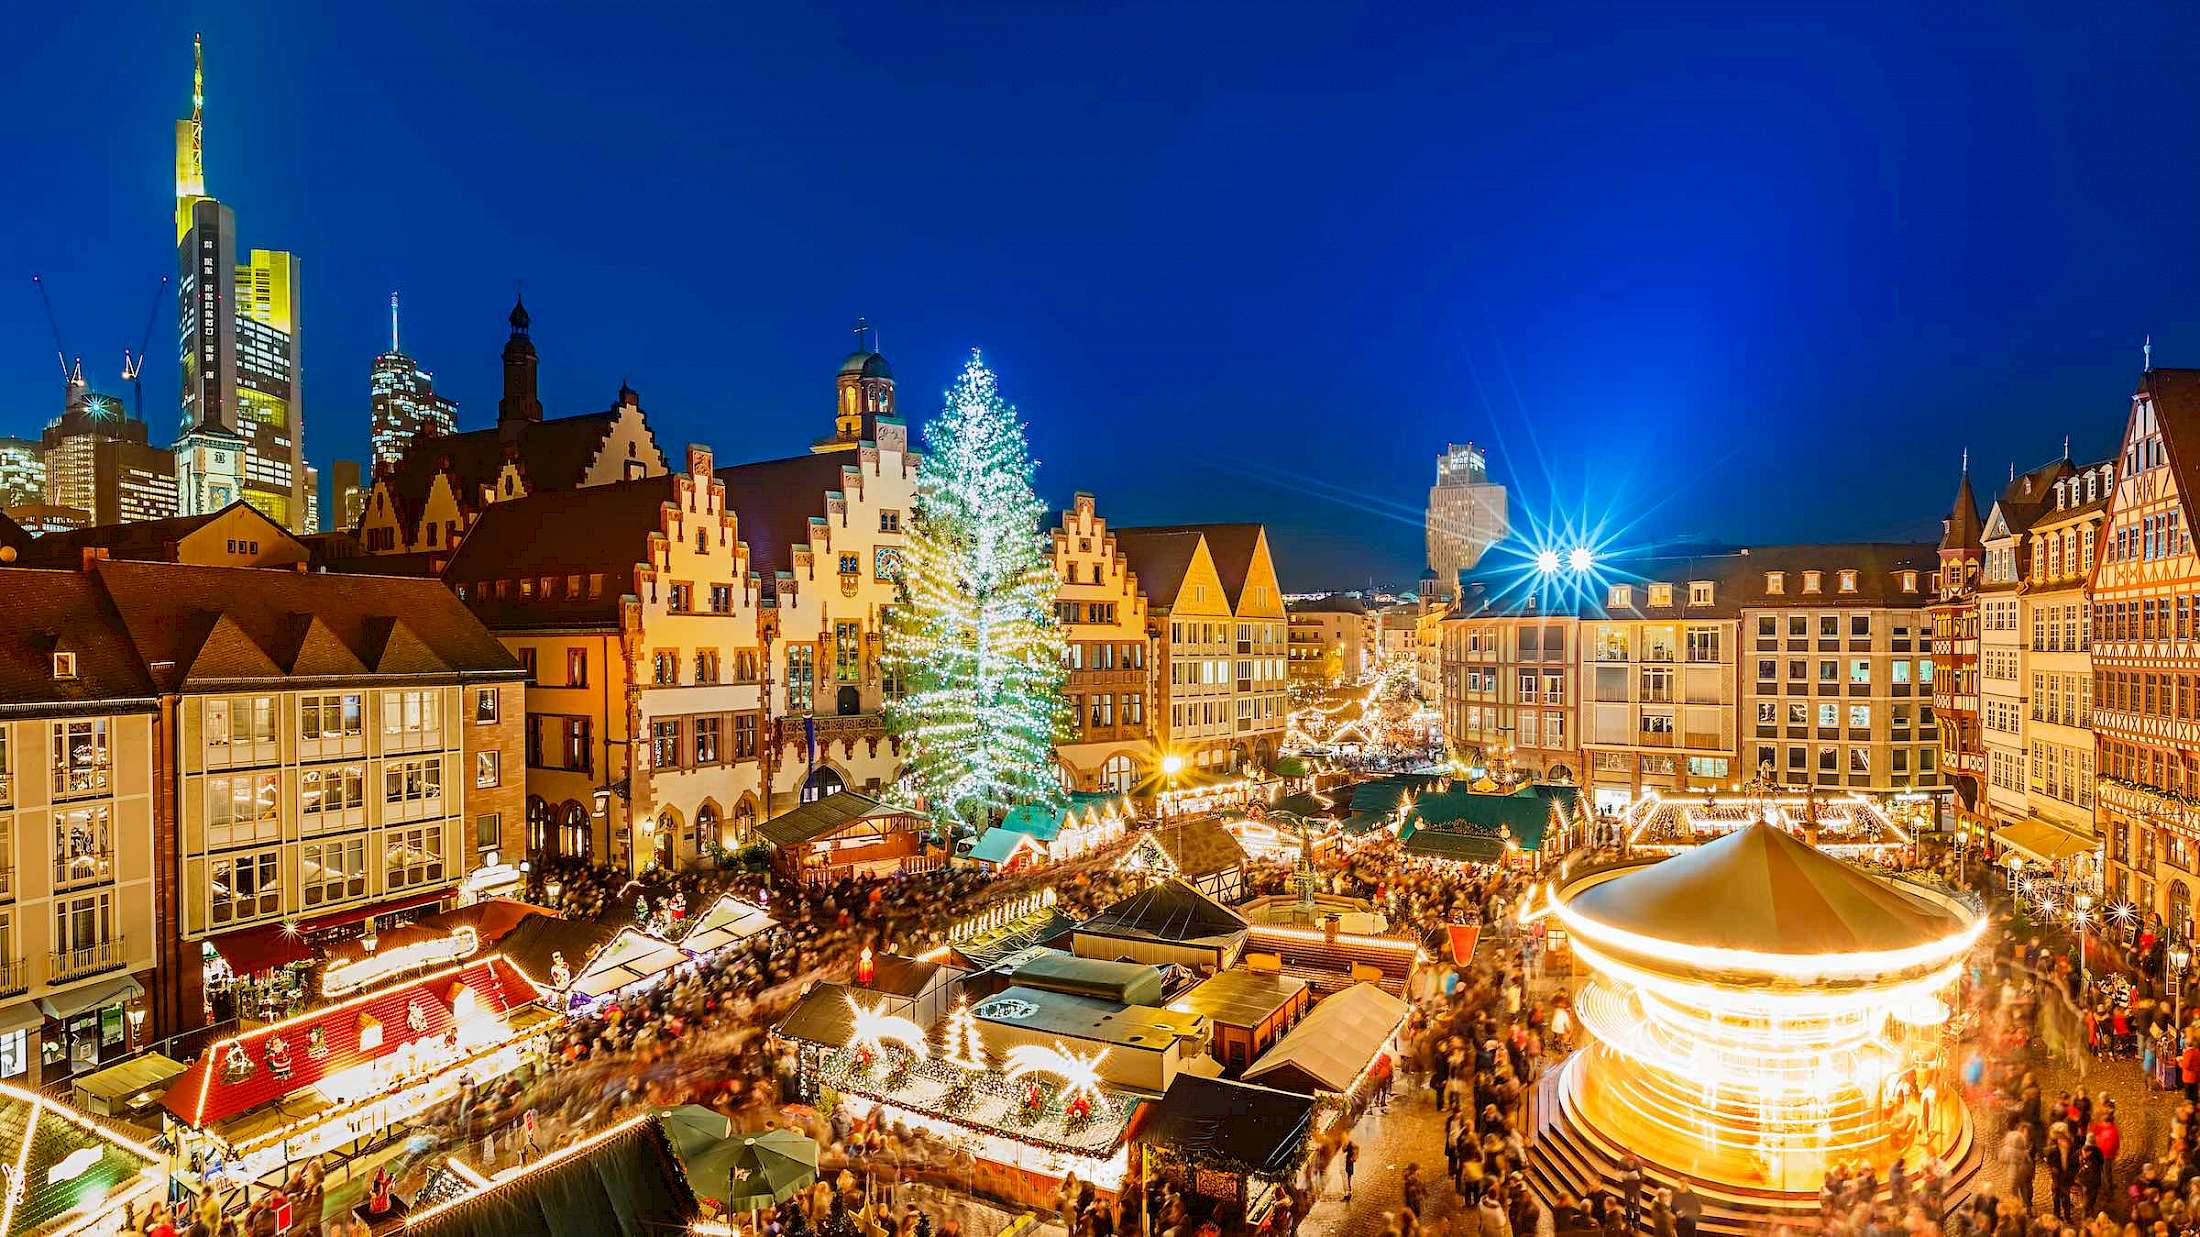 Discover the splendor of Europe's Christmas Markets.